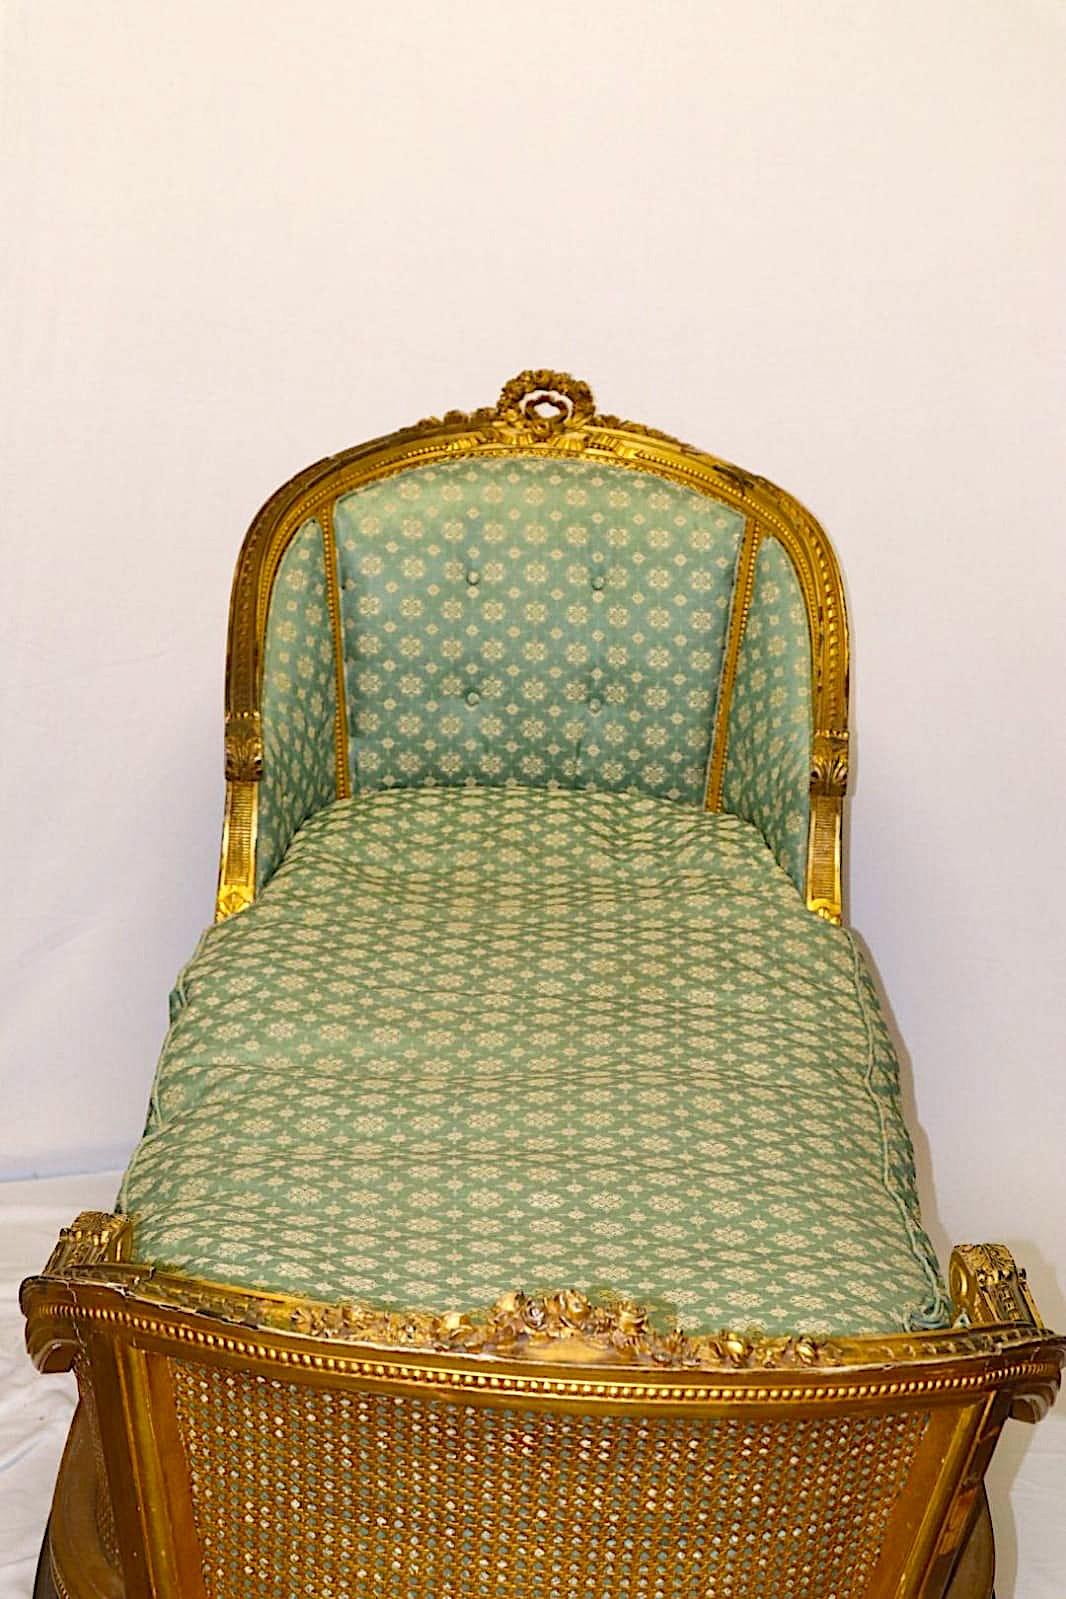 Dieser französische Louis XVI-Recamier ist fast zwei Meter lang und lädt den Besitzer zur Entspannung ein. Die detailreichen Schnitzereien werden durch das vergoldete Holz akzentuiert, das heute entlang der üppigen Kurven des Rahmens brüniert ist